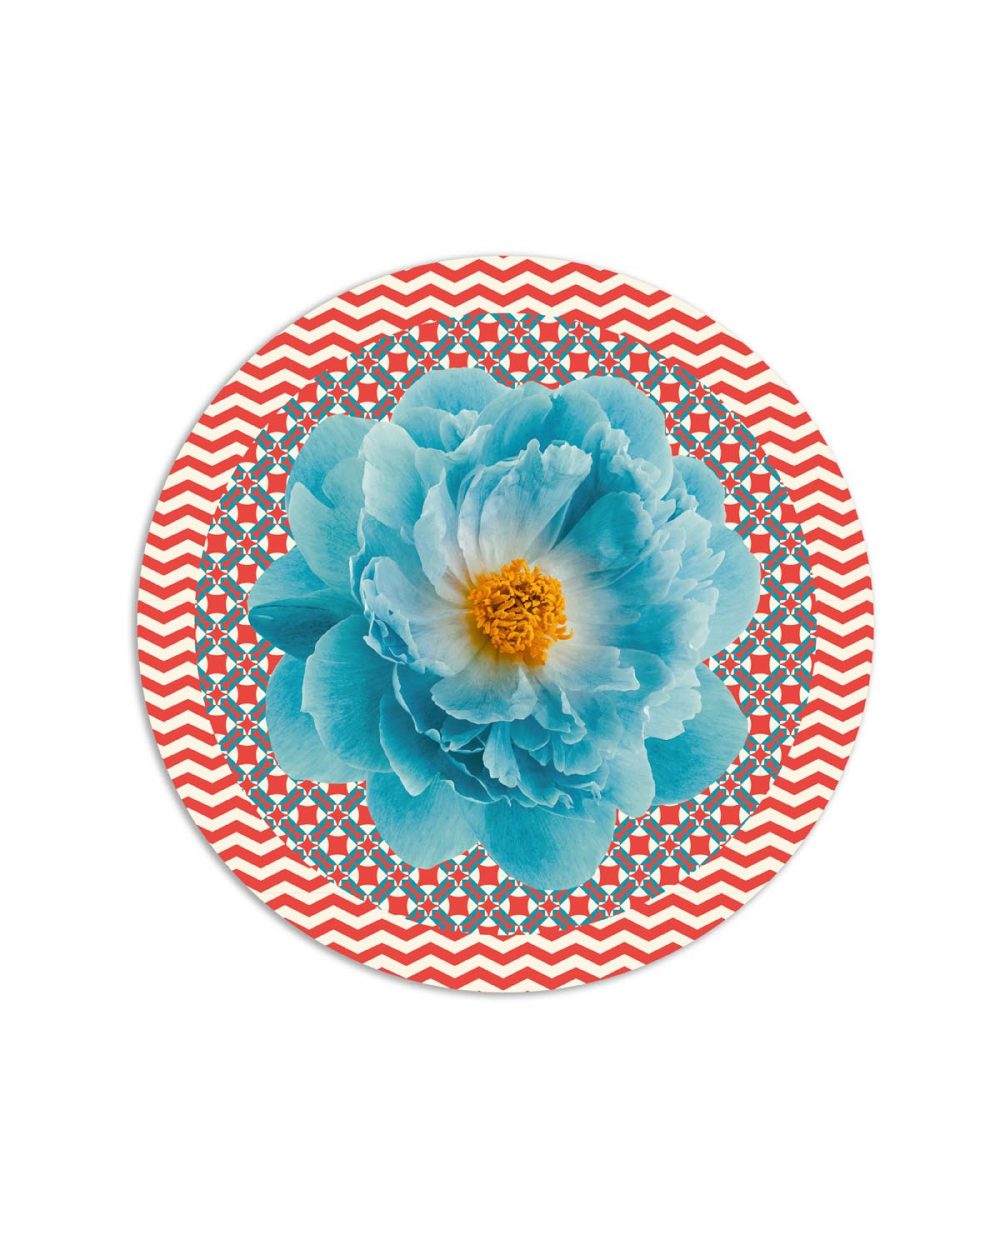 tovaglietta tonda flower power fiore azzurro rosso bianco